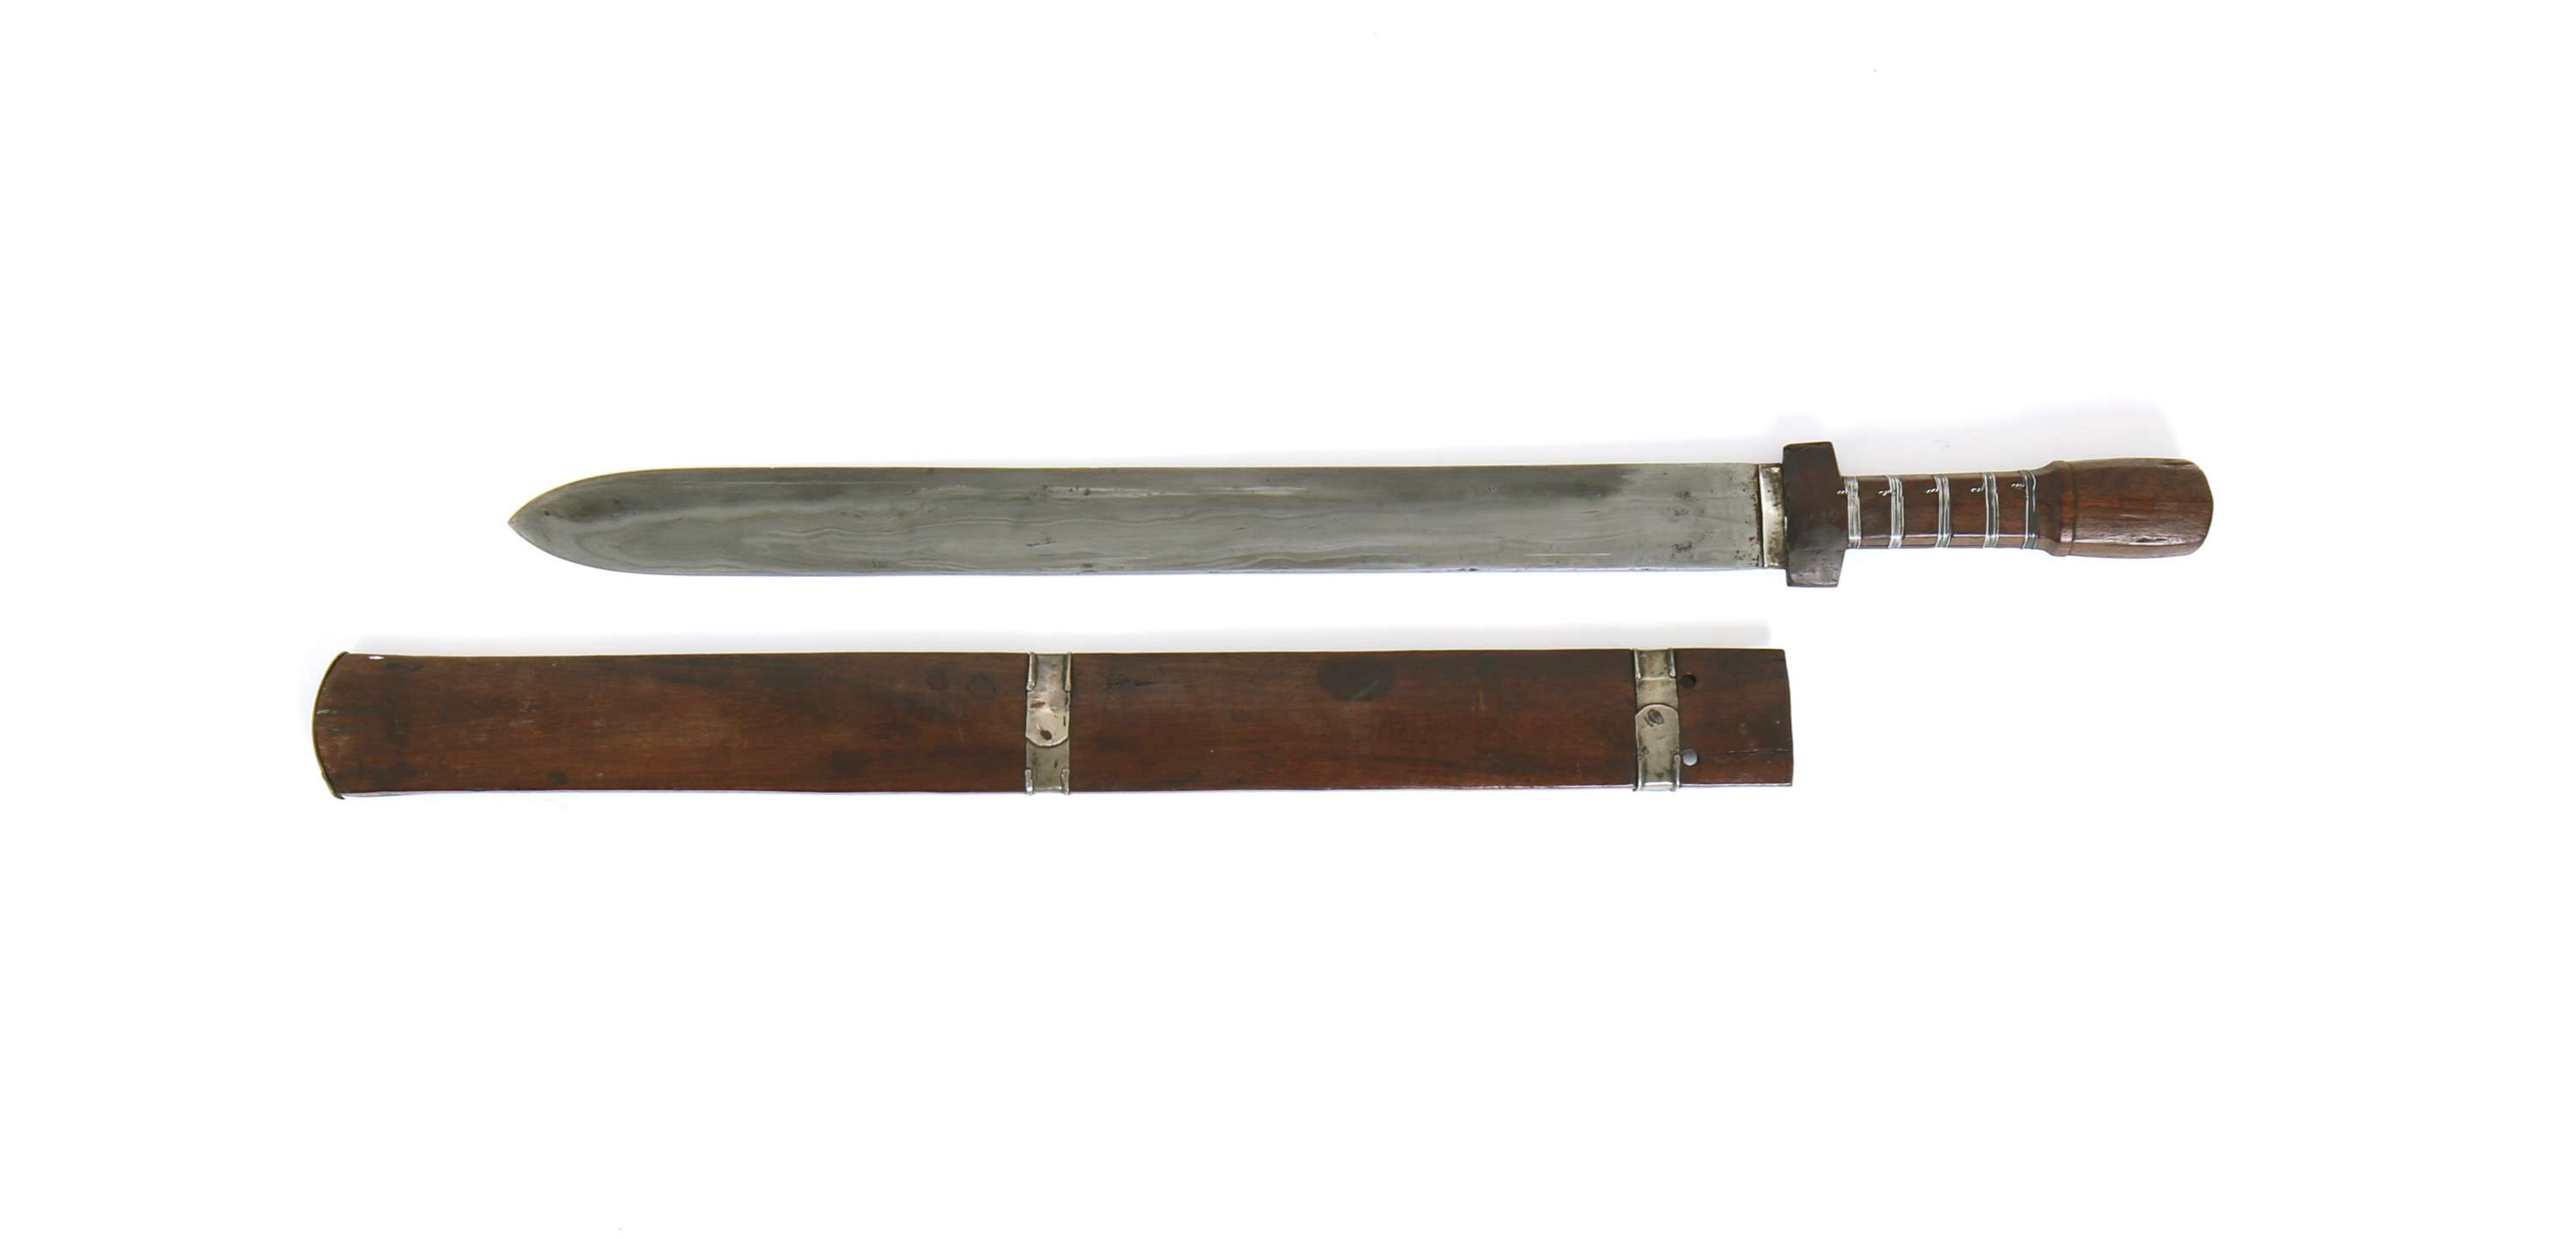 Sikkim ban sword